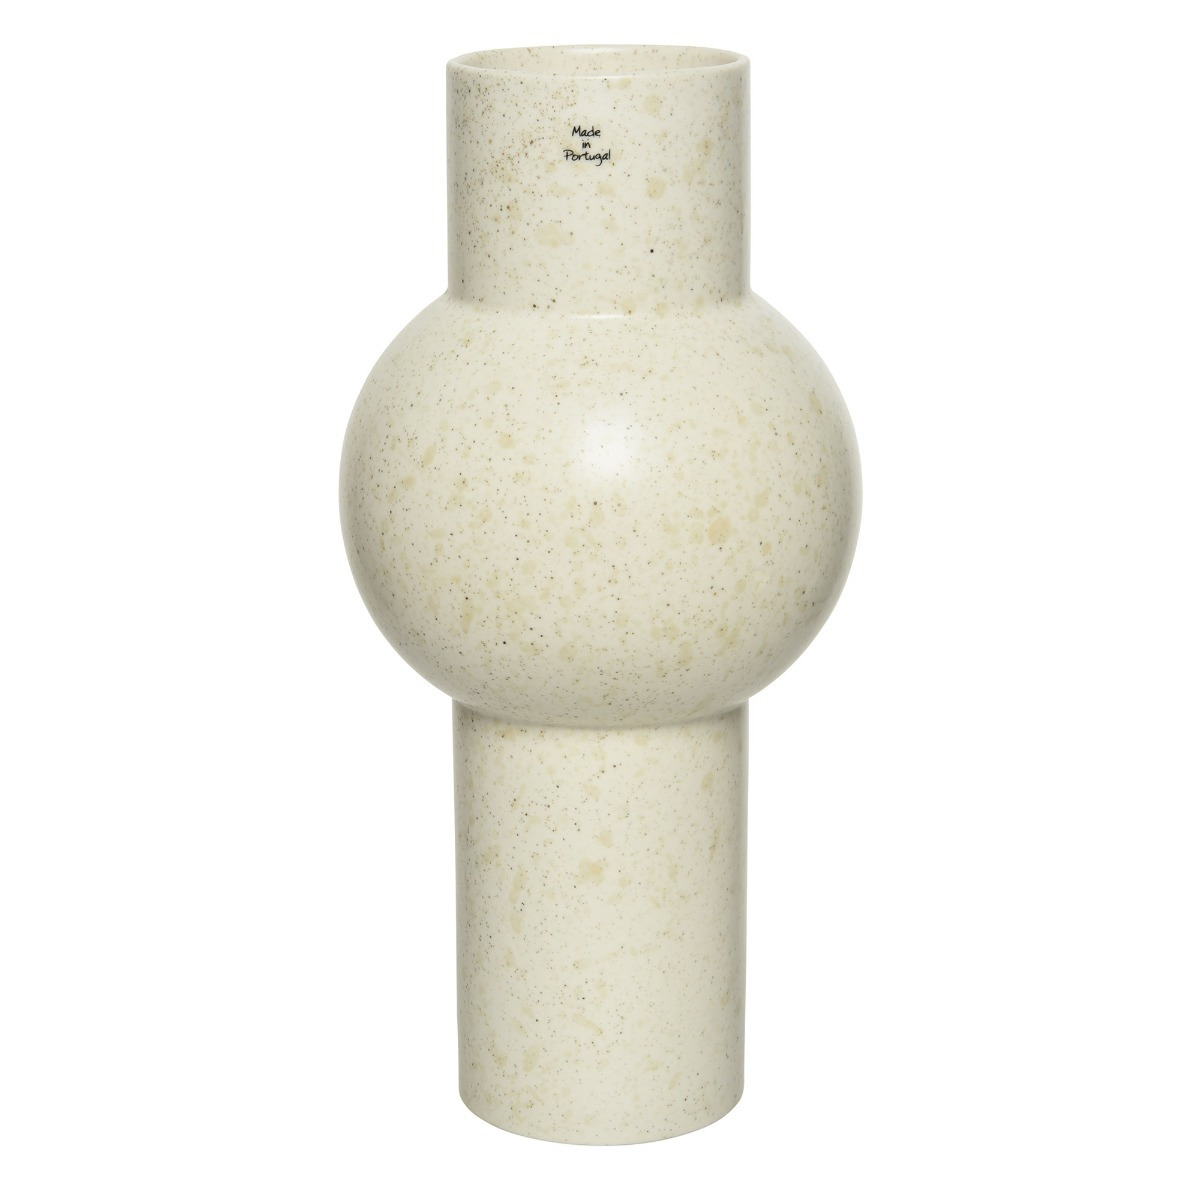 Tall White Vase - Barker & Stonehouse - image 1